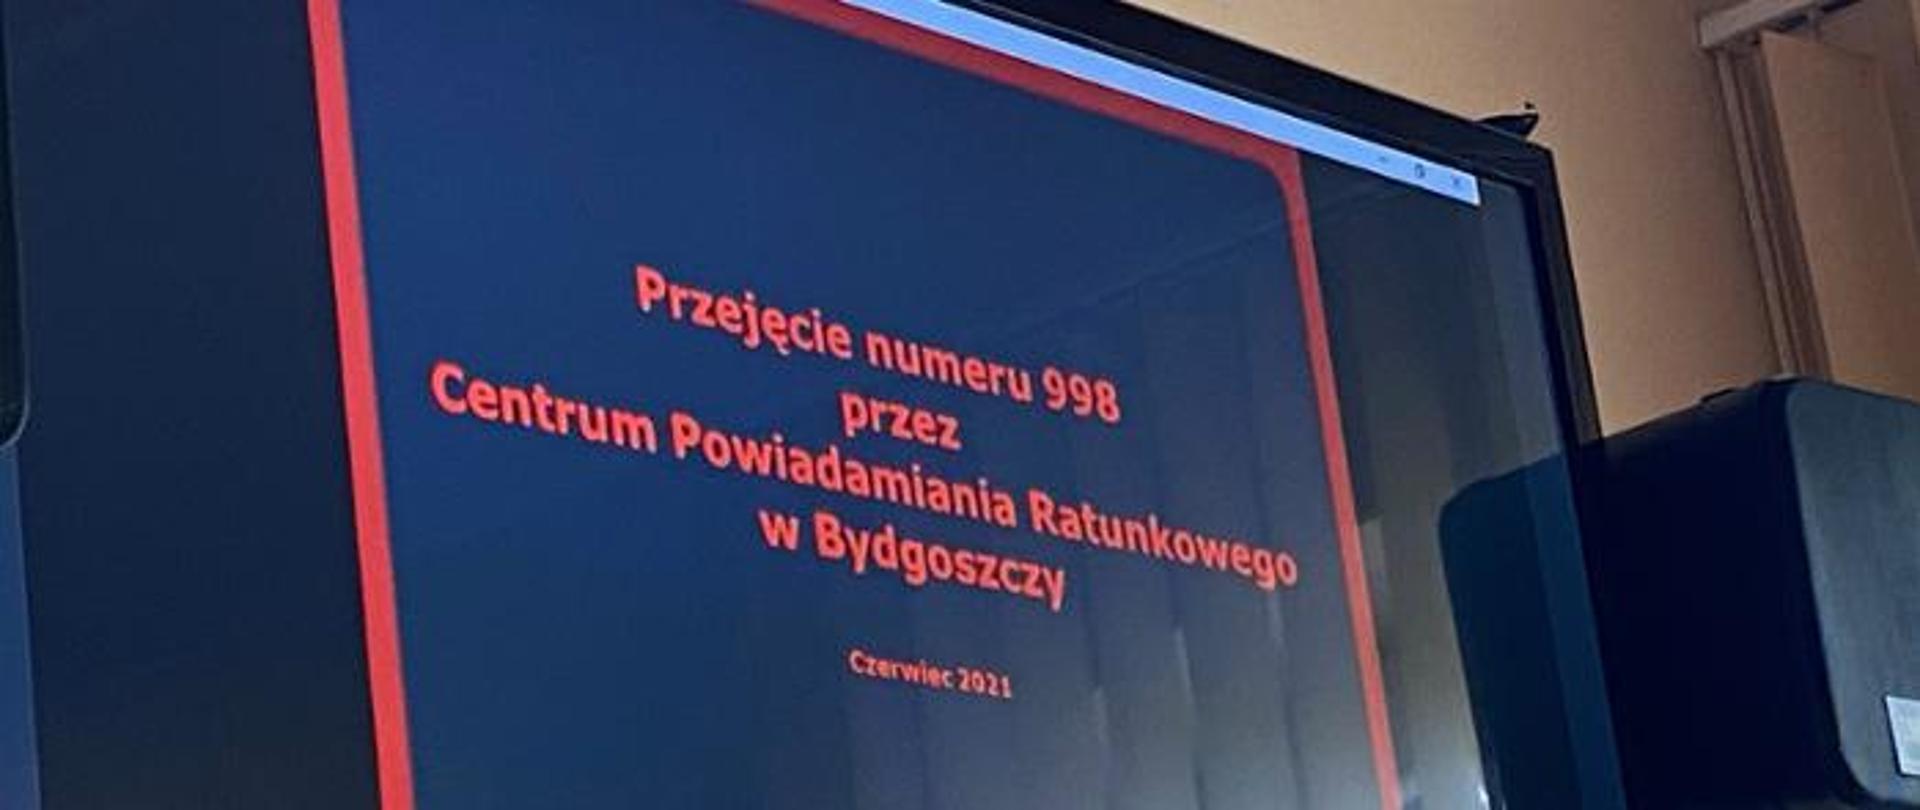 Przejęcie numeru 998 przez CPR w Bydgoszczy